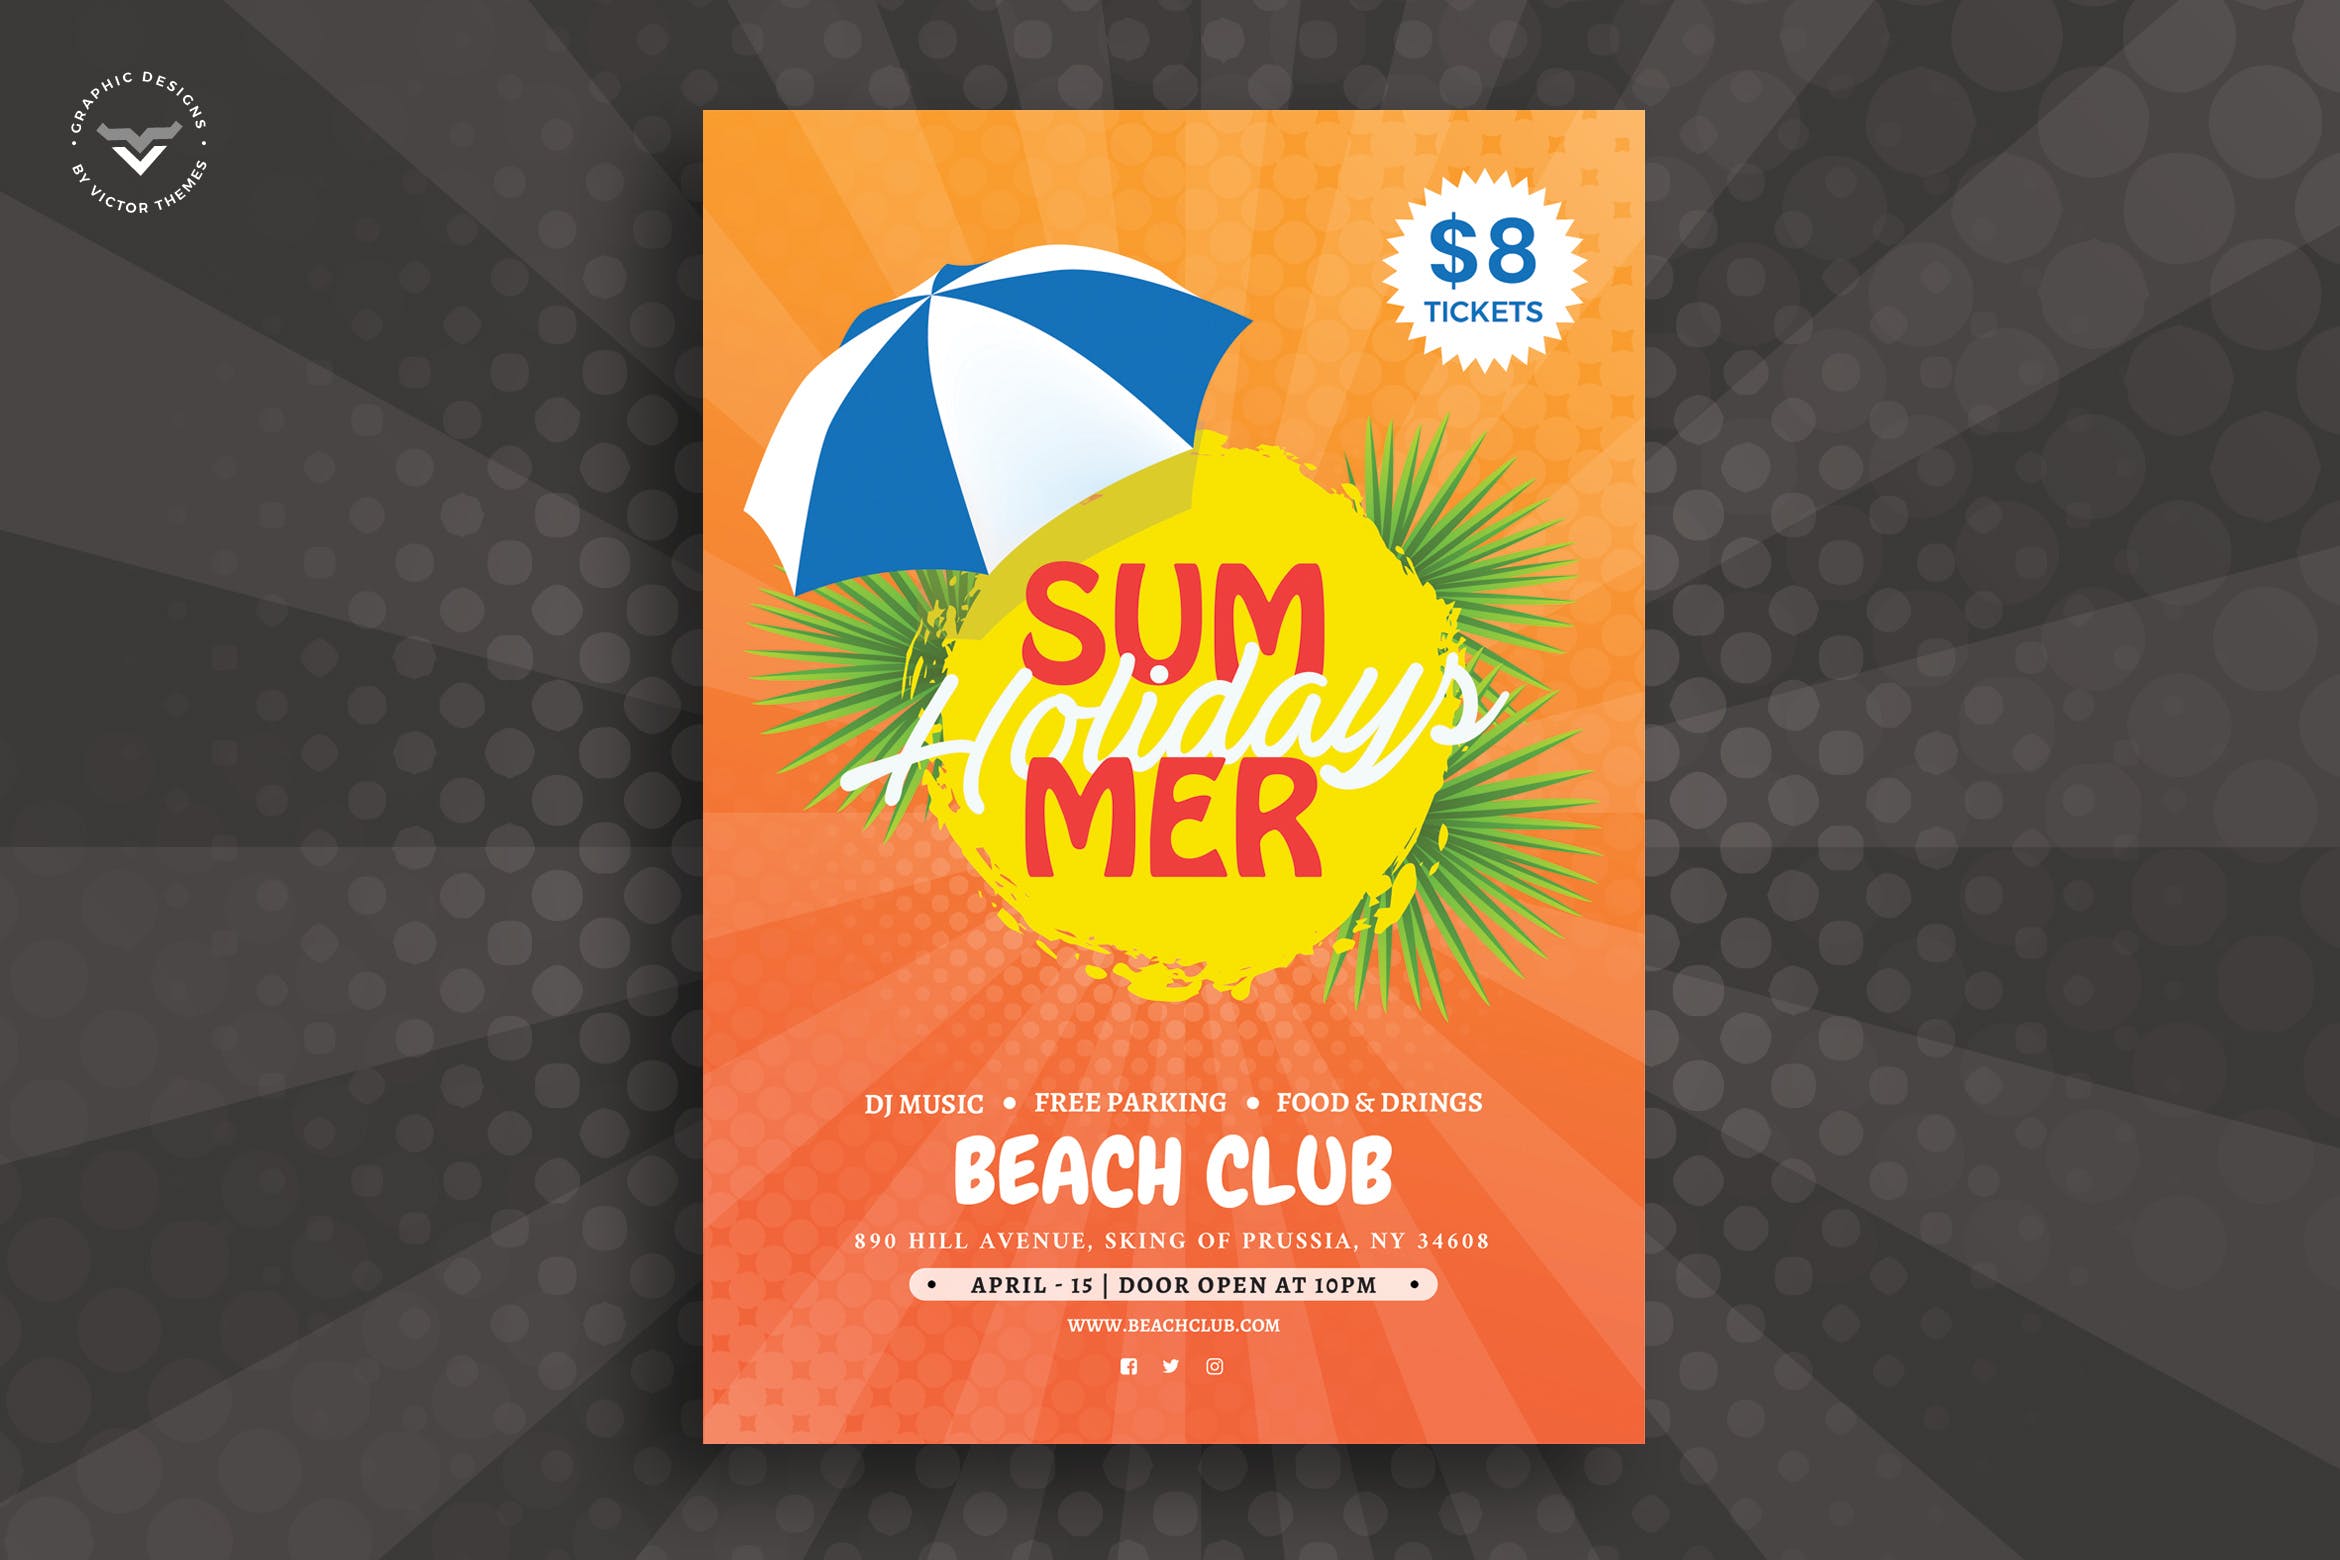 夏日主题派对活动宣传单设计模板 Summer Flyer Template插图